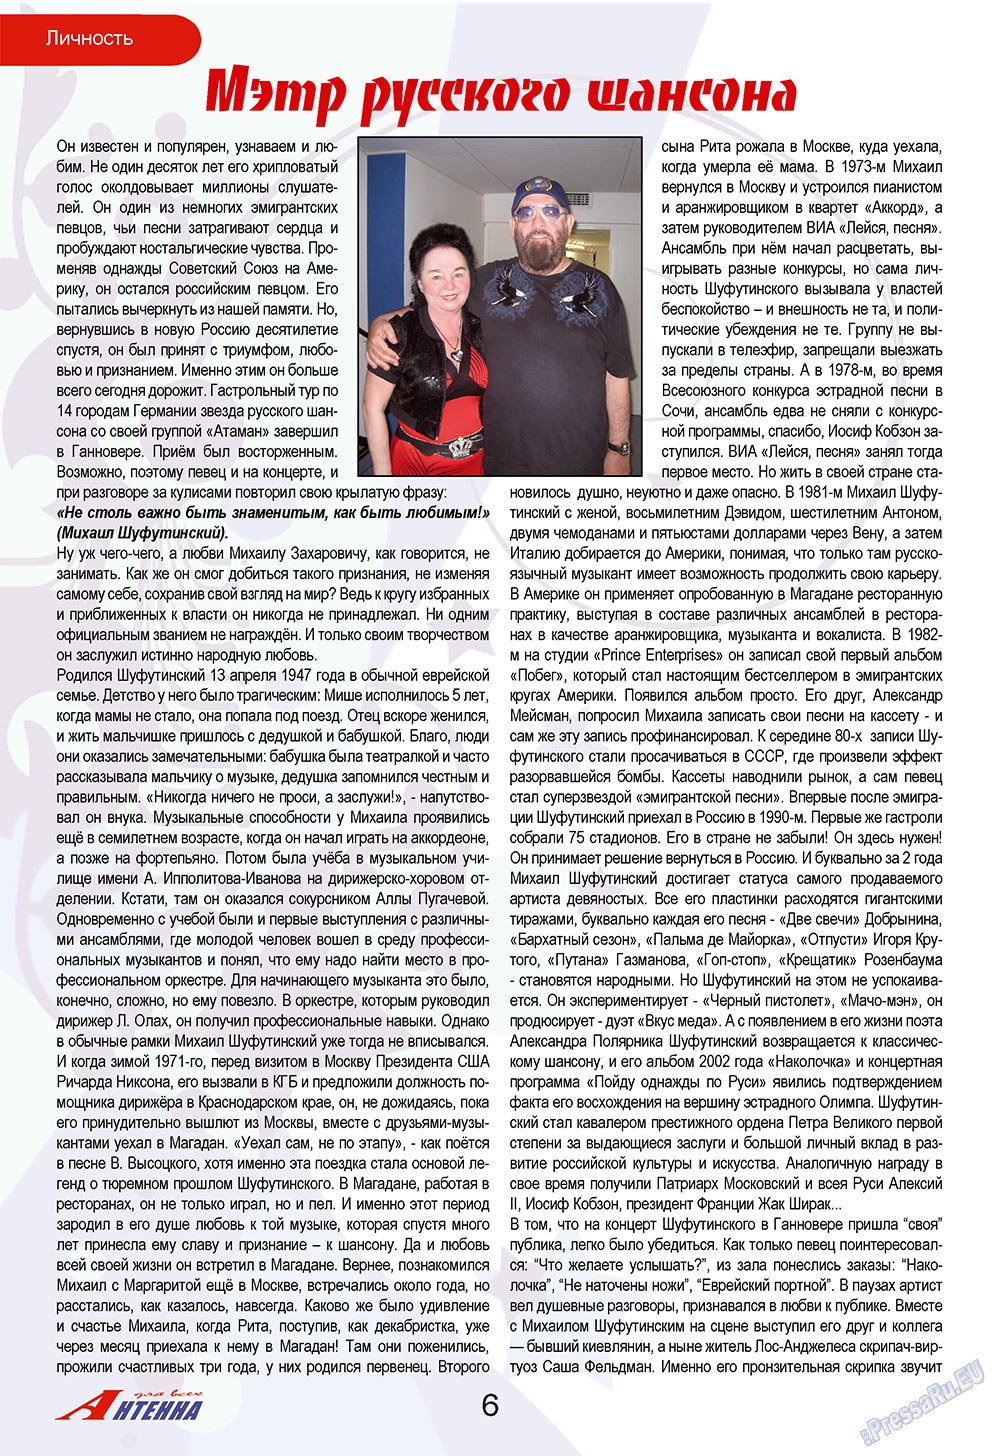 Антенна, журнал. 2009 №11 стр.6